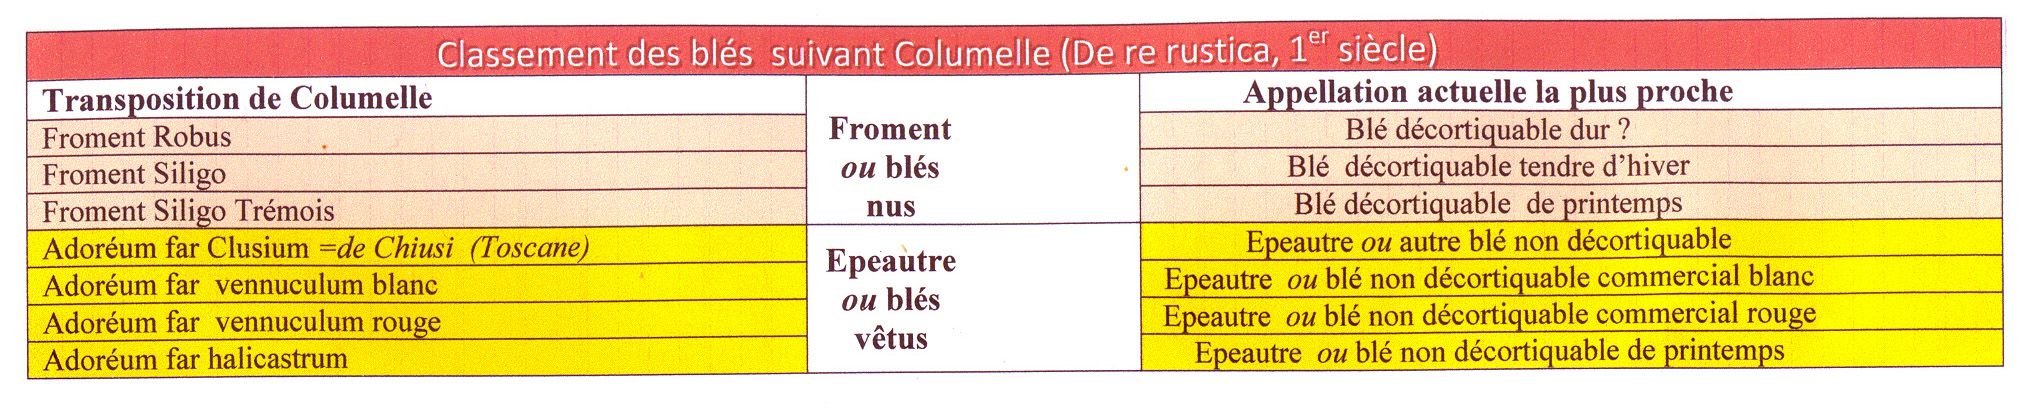 Classement_Columelle